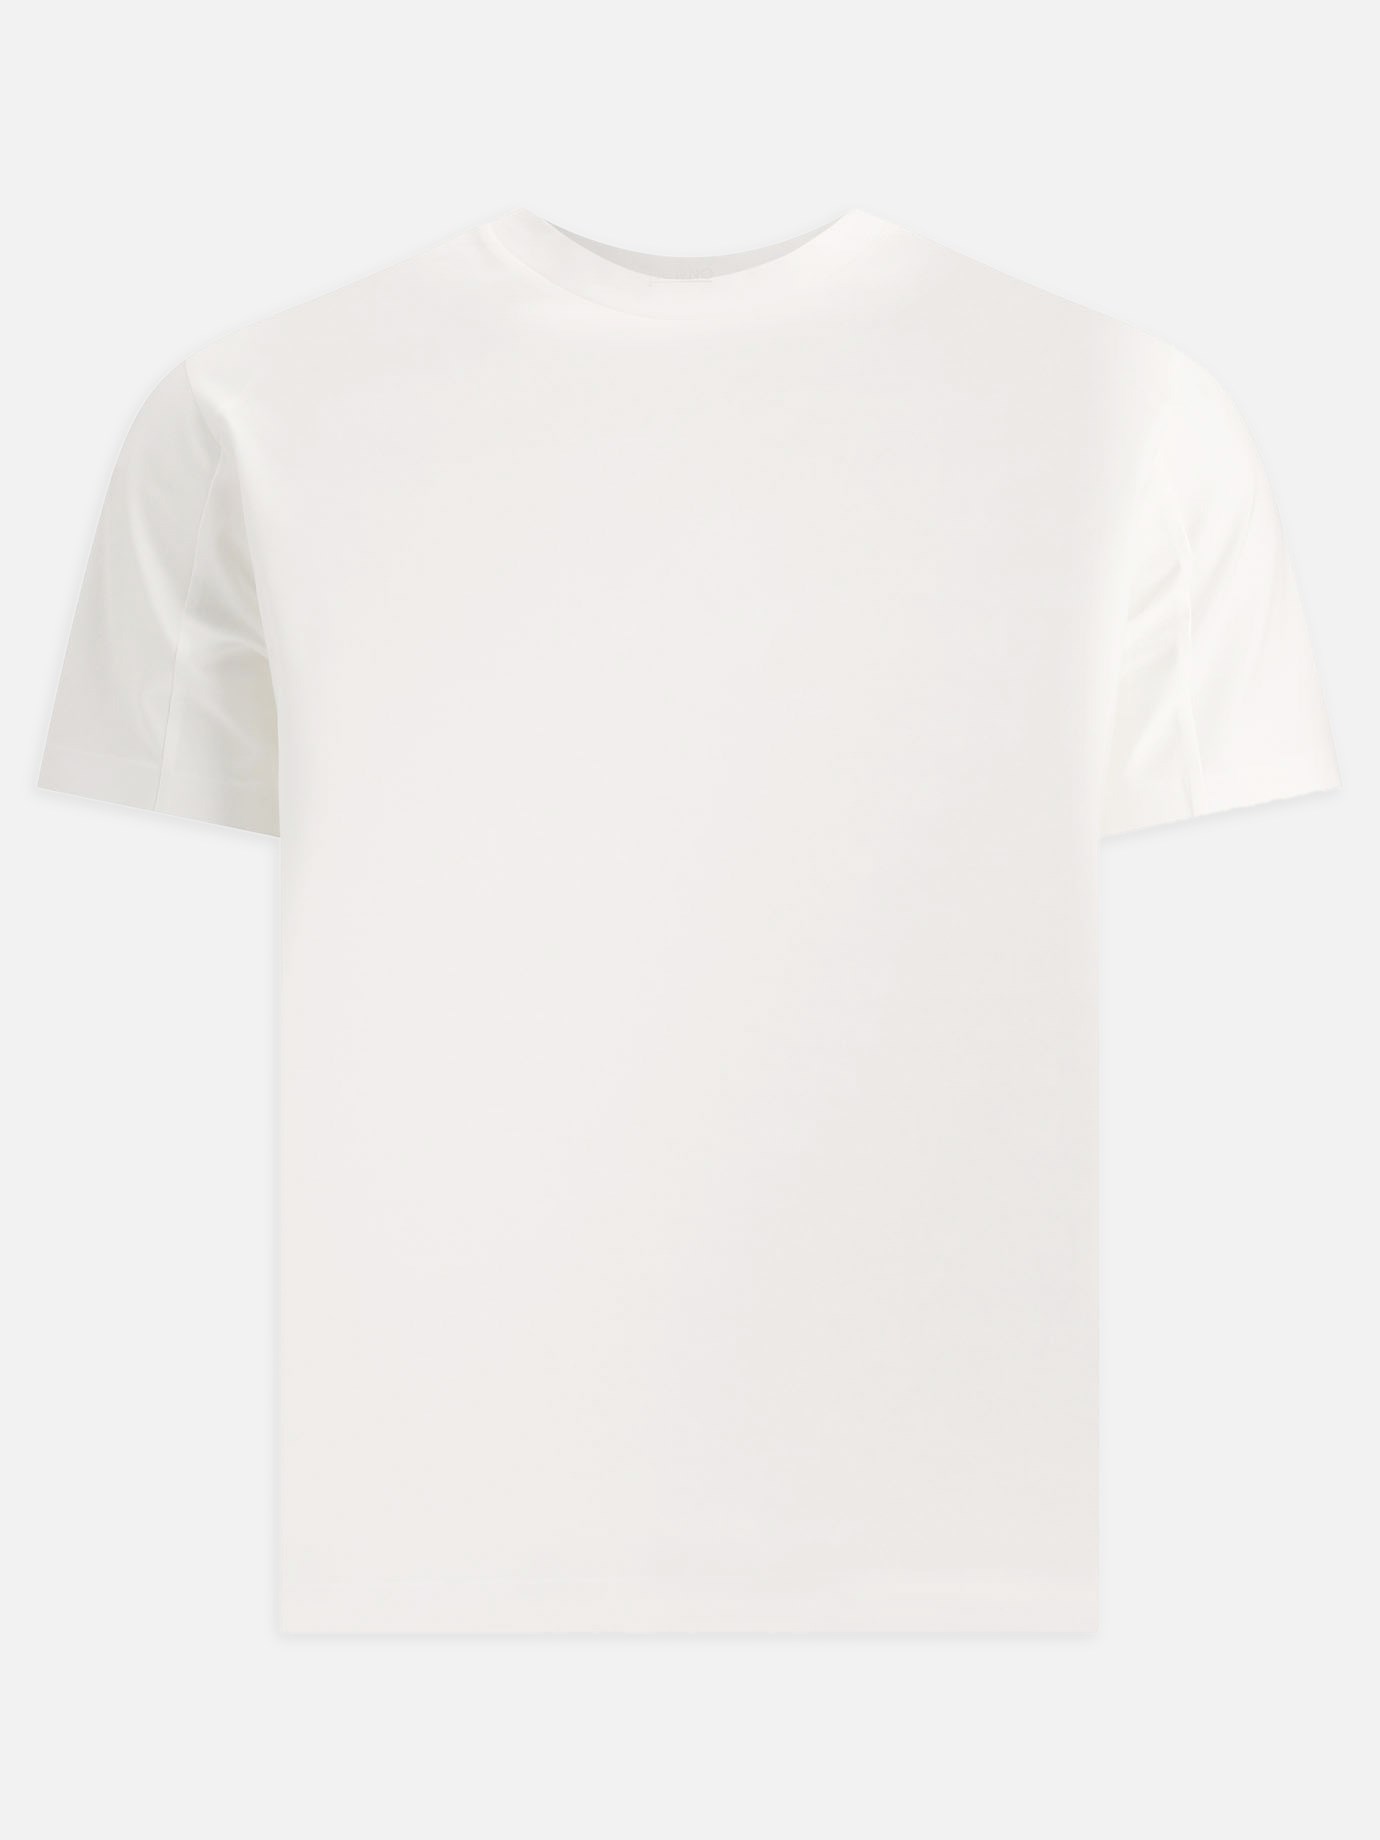 Seamless t-shirtby Herno - 1